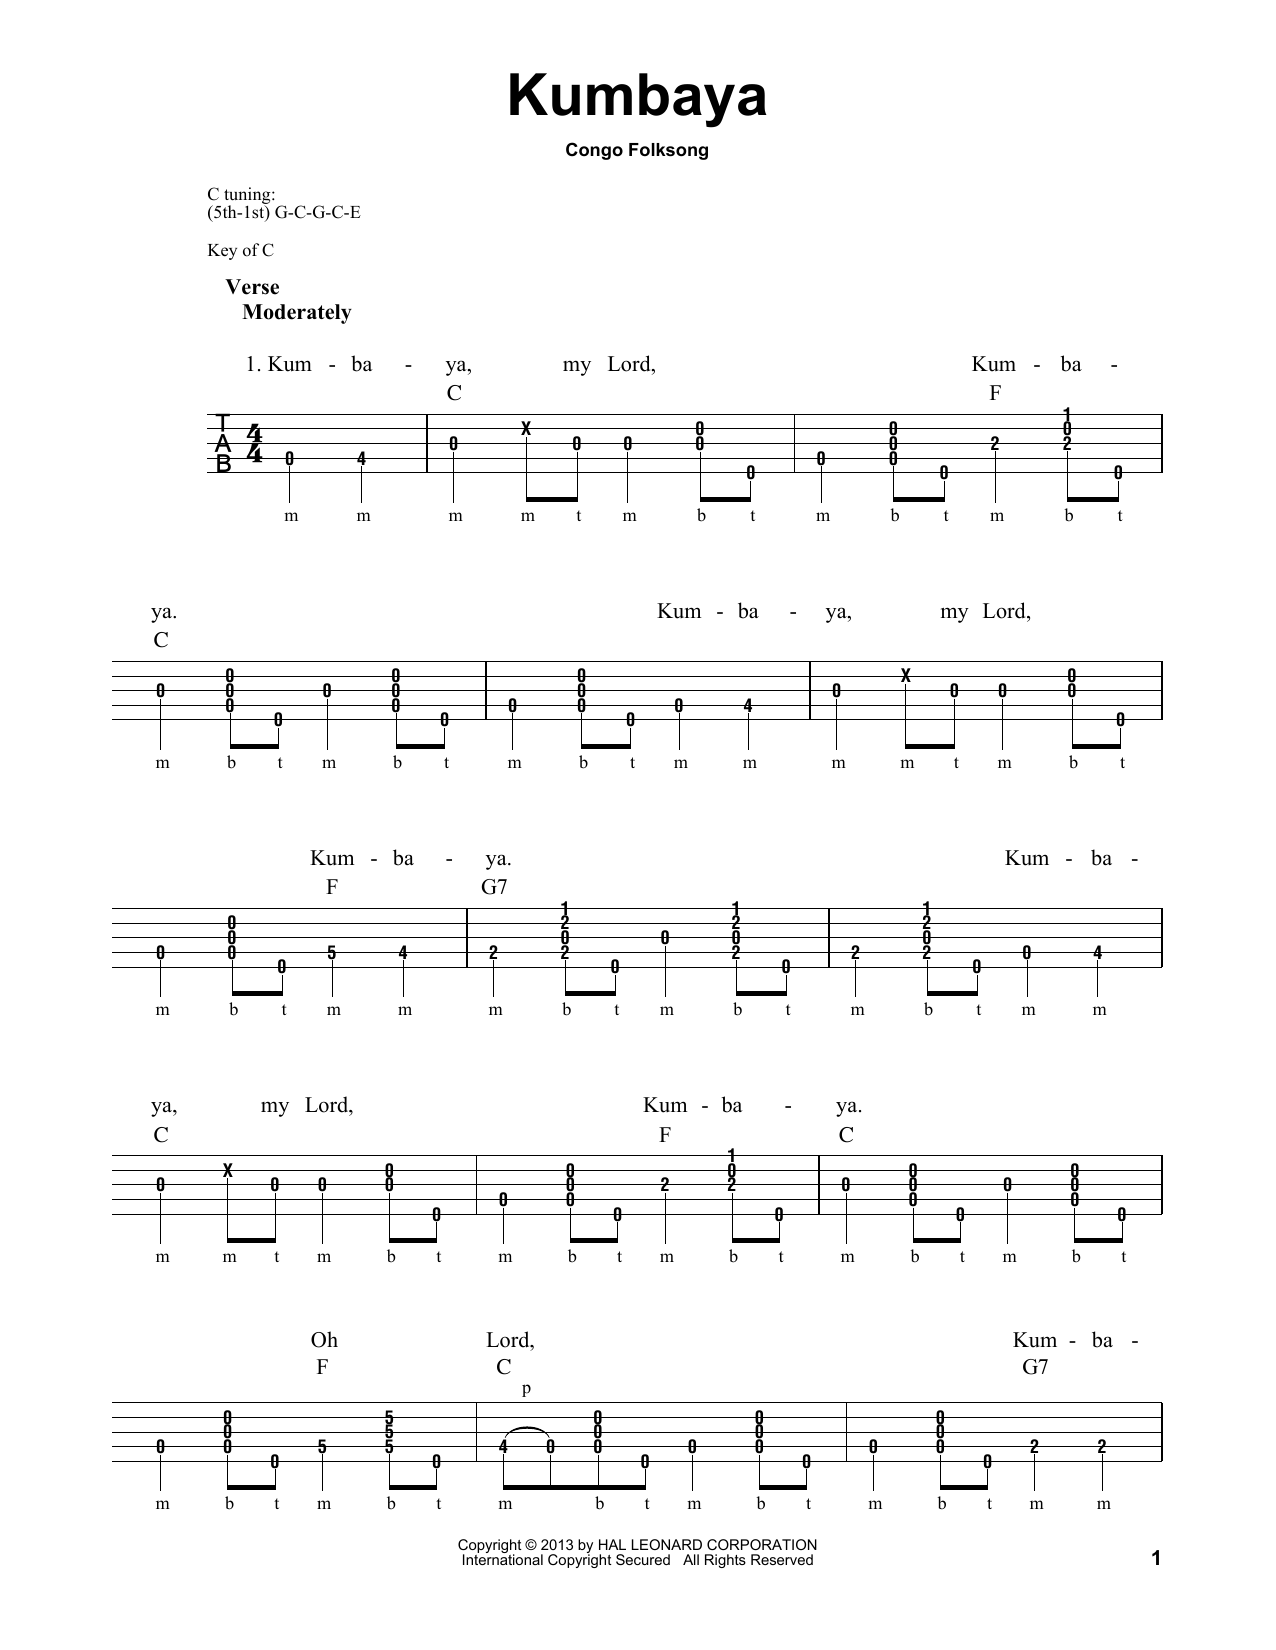 Michael Miles Kumbaya Sheet Music Notes & Chords for Banjo - Download or Print PDF